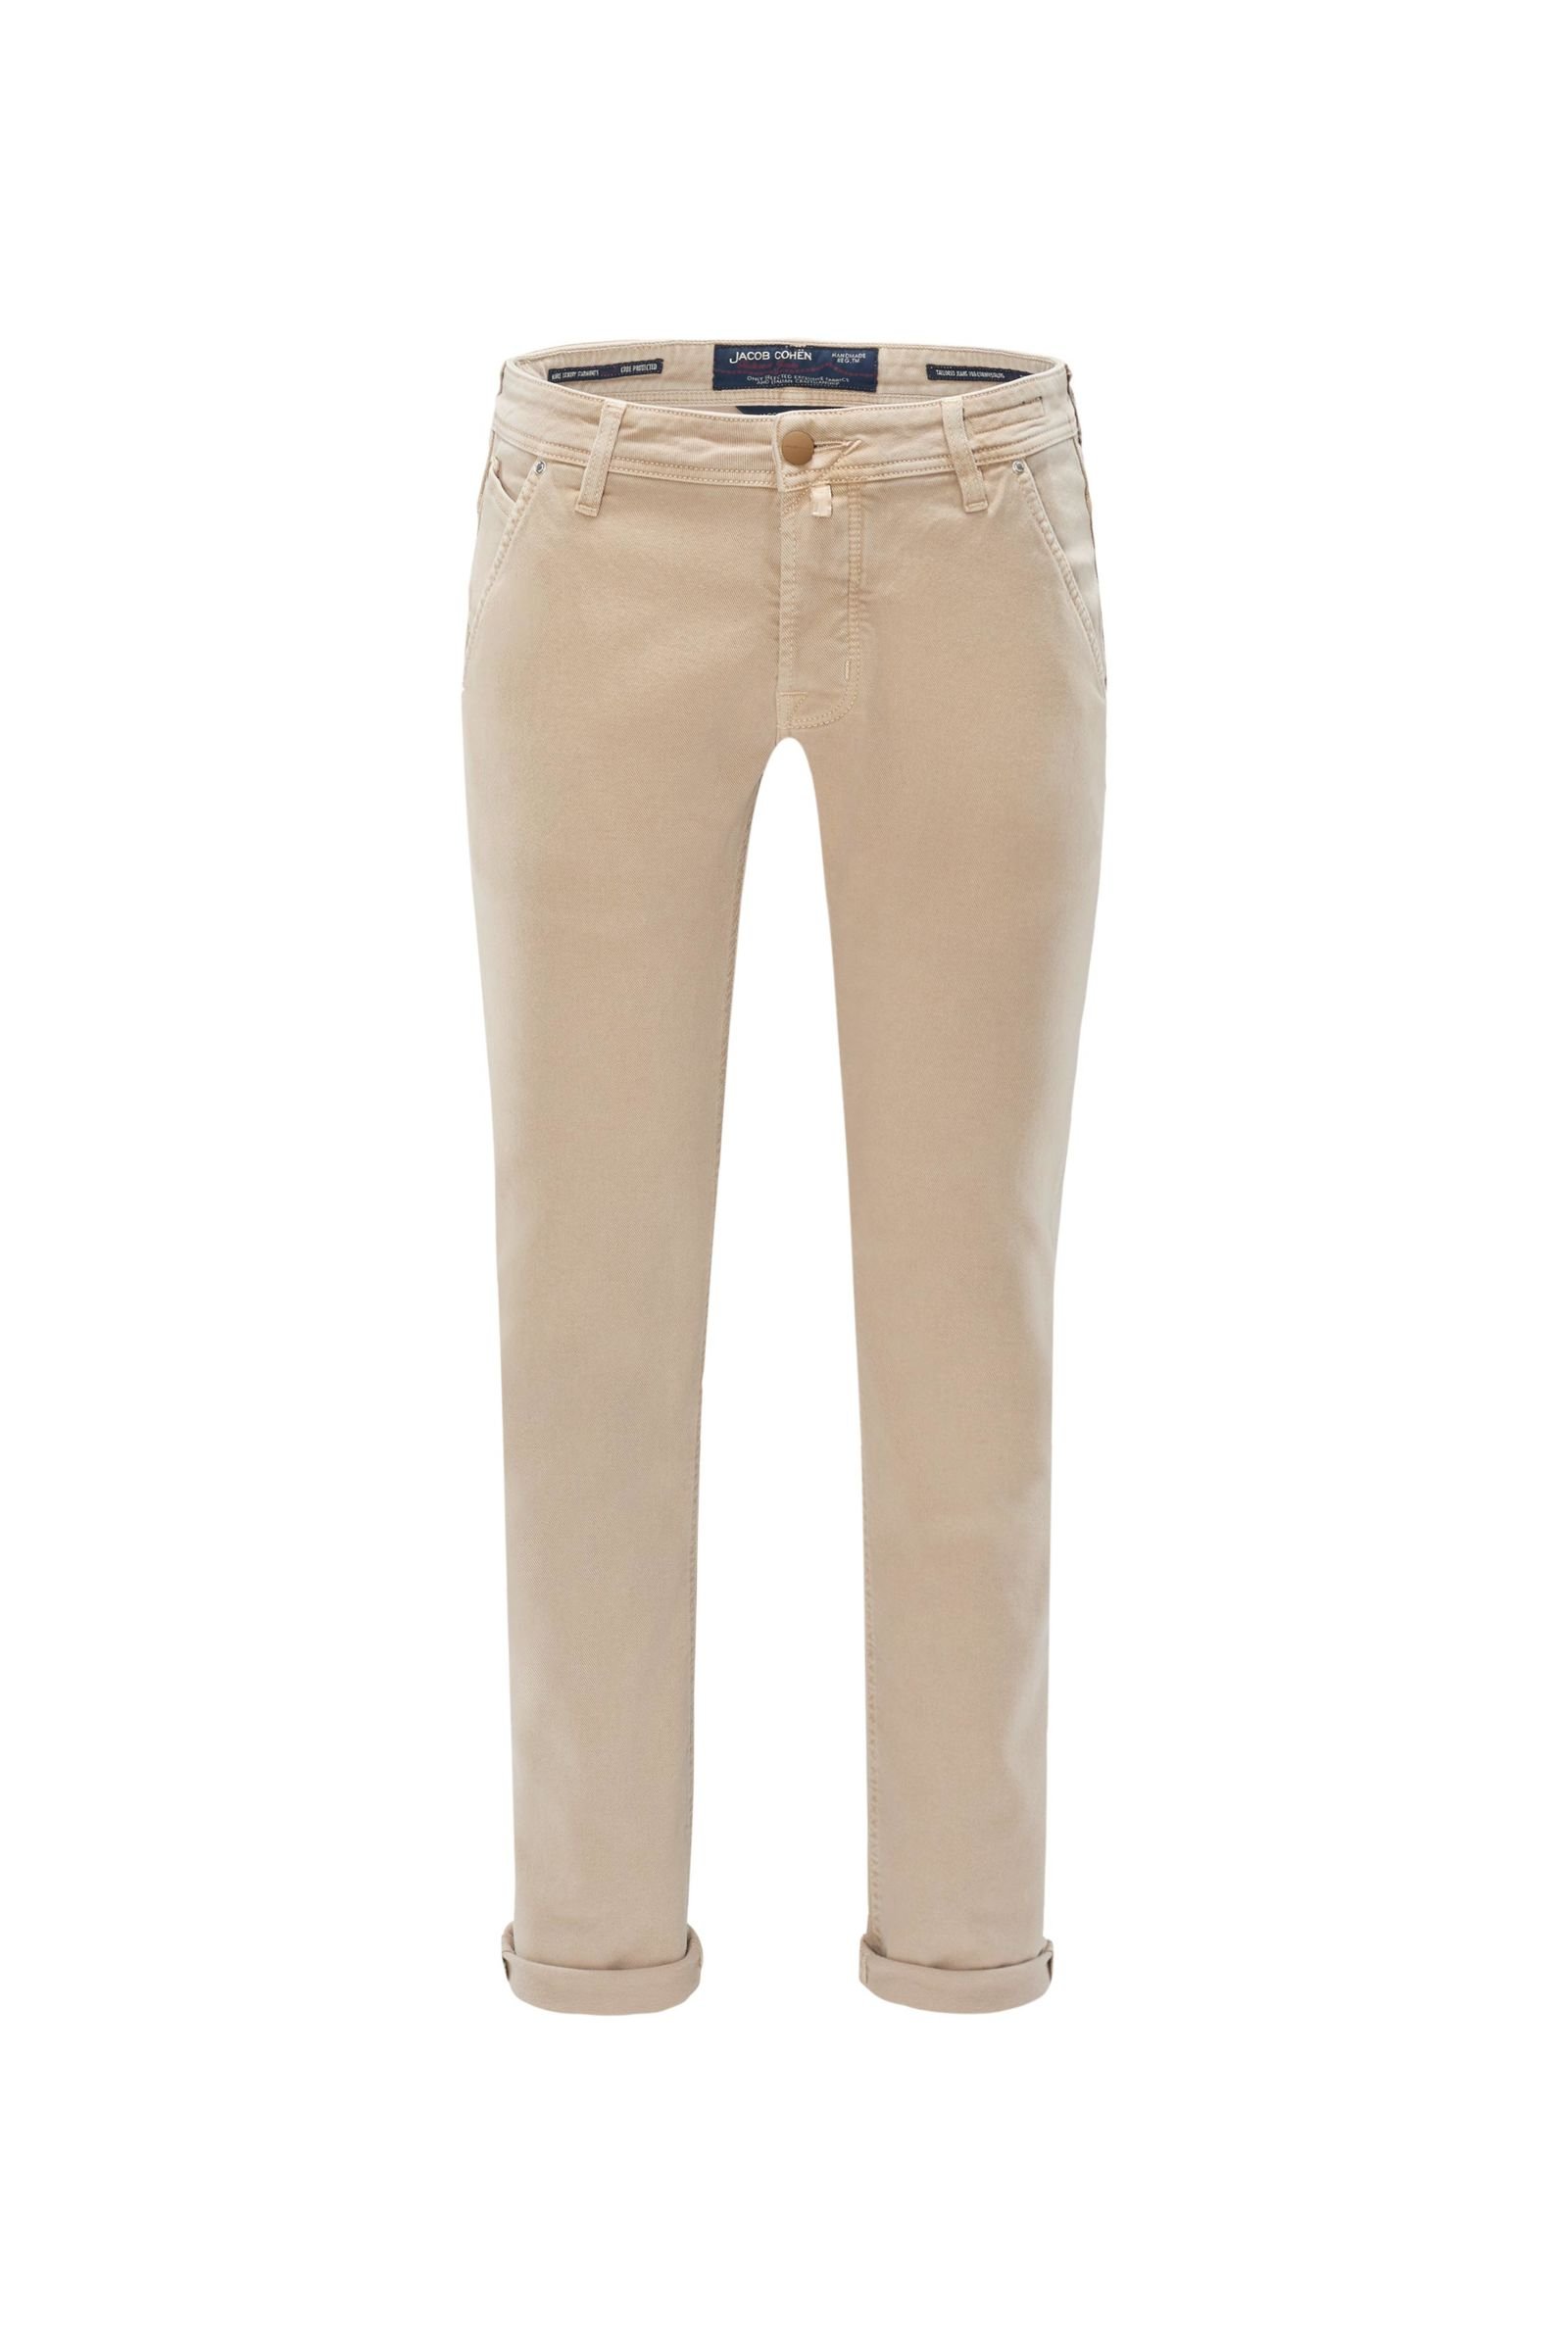 Cotton trousers 'J613 Comfort Vintage Slim Fit' beige